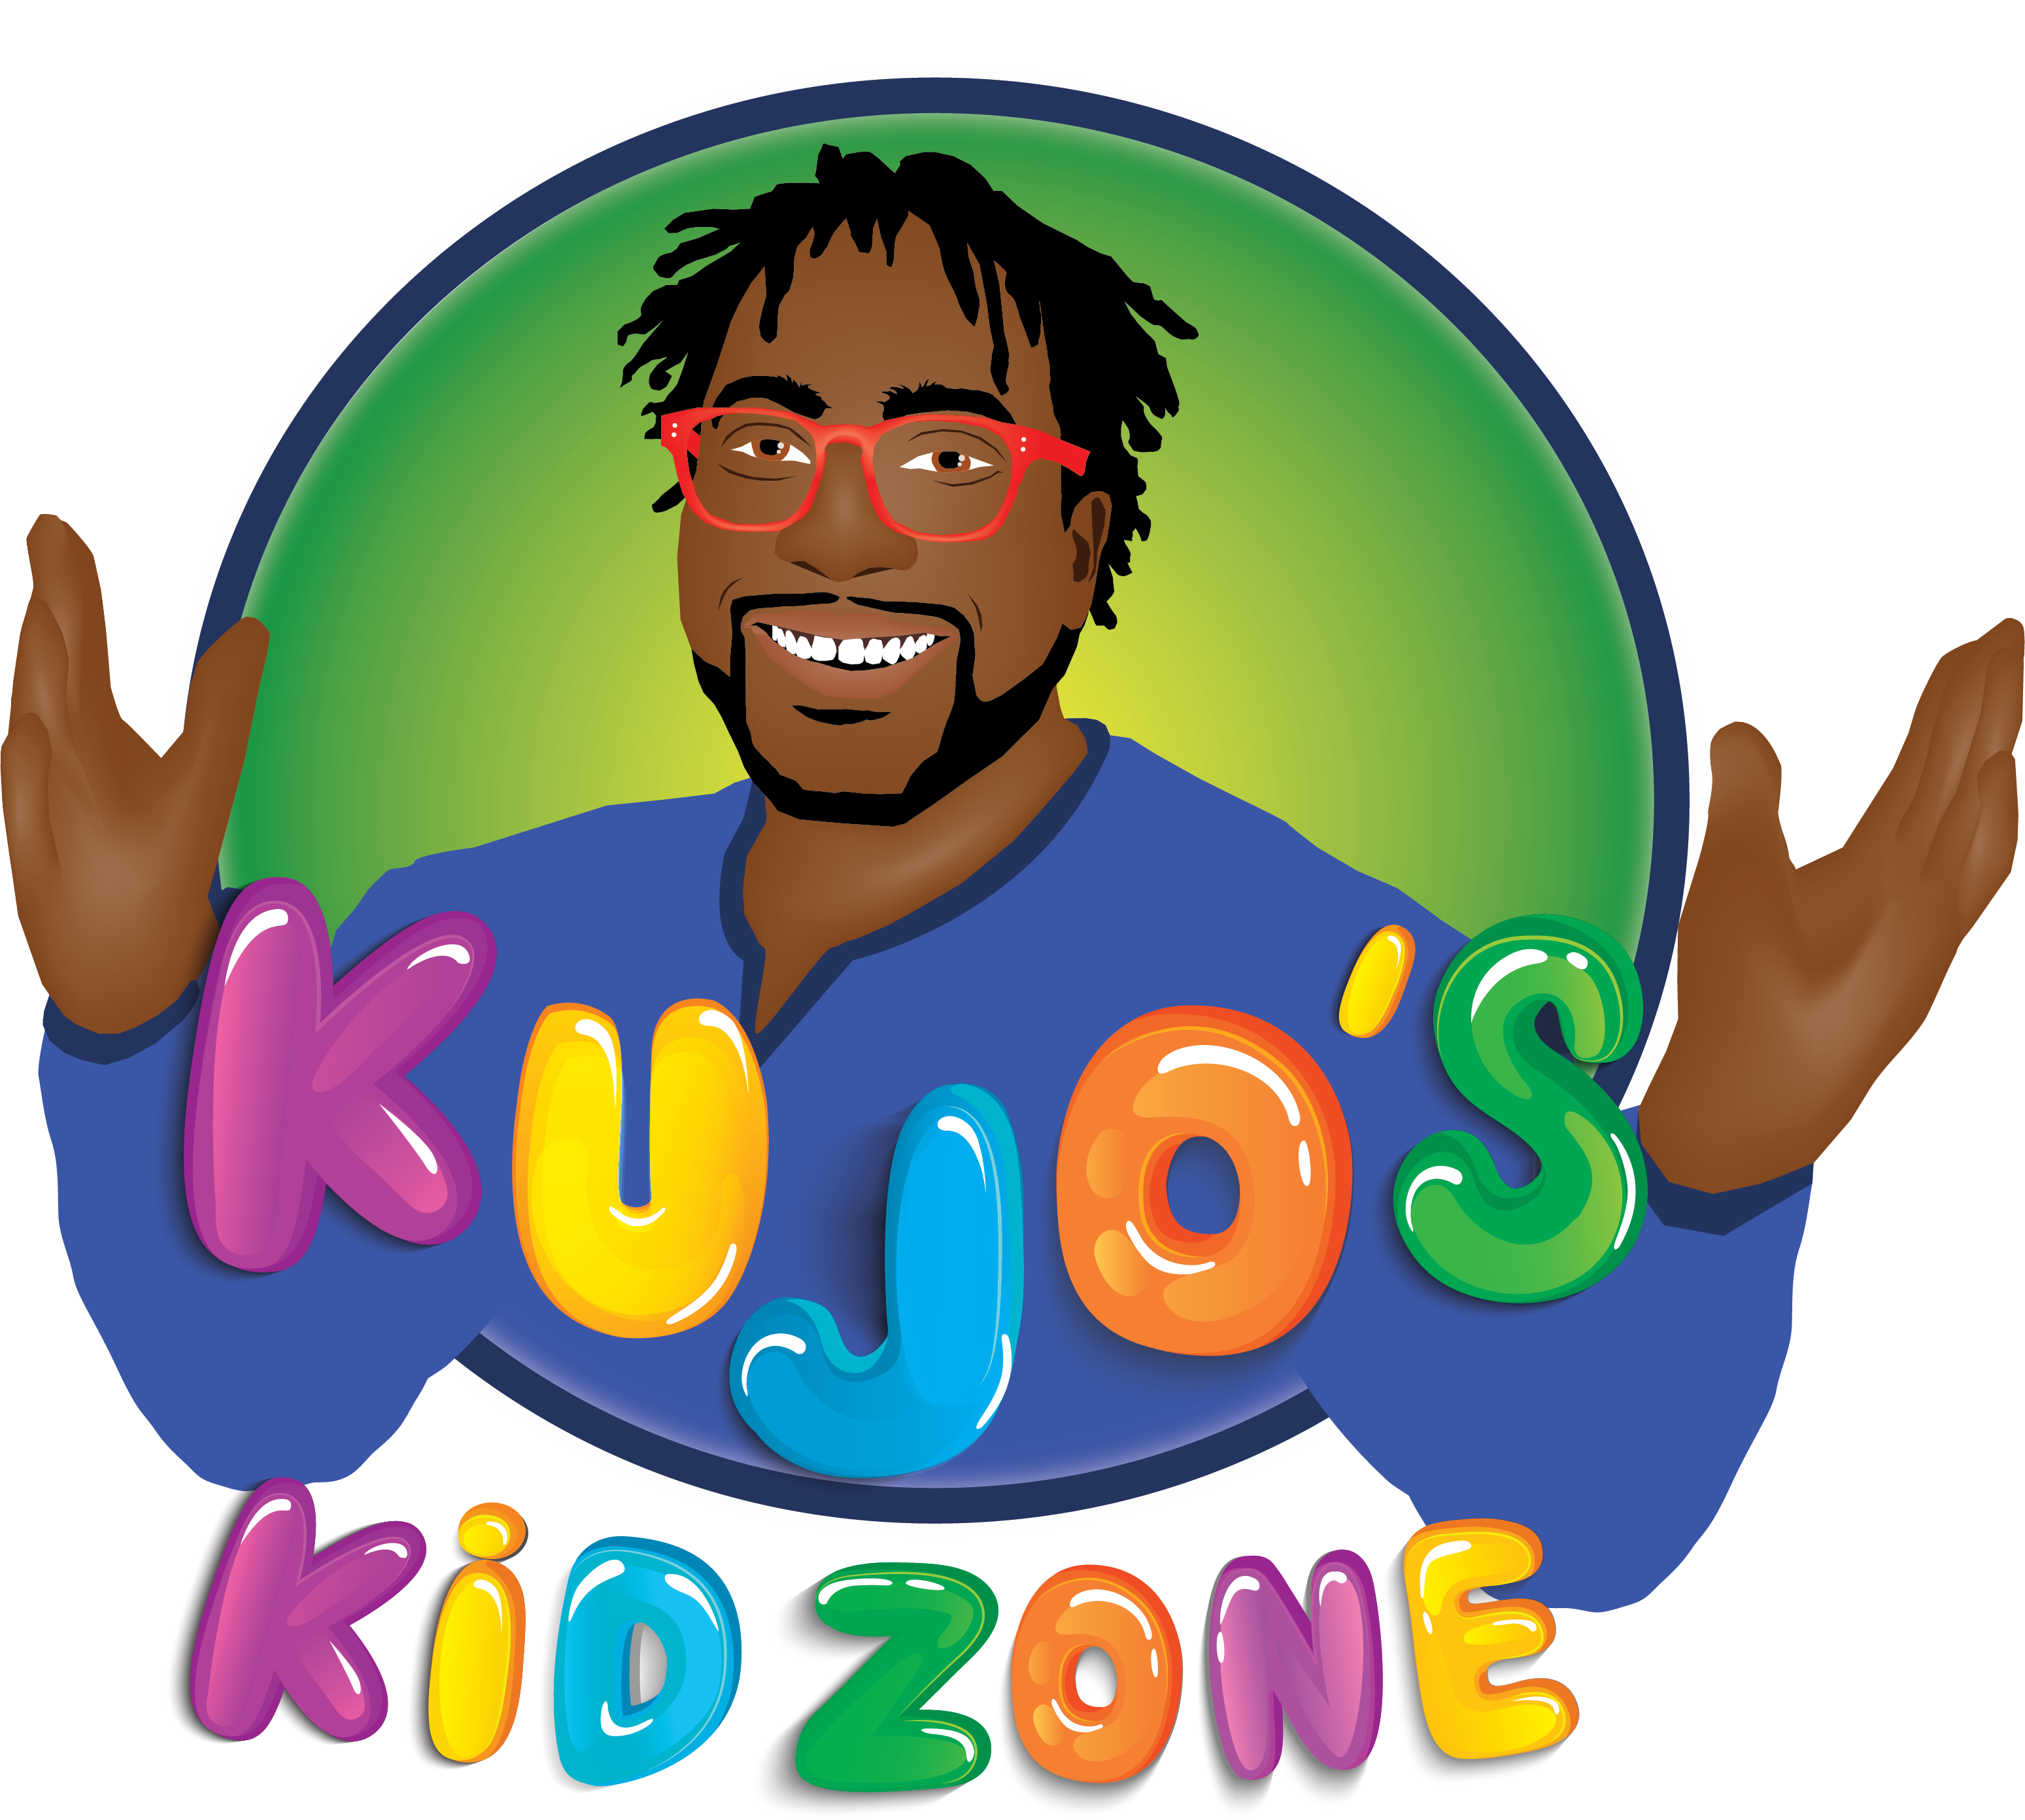 Kujo's Kid Zone